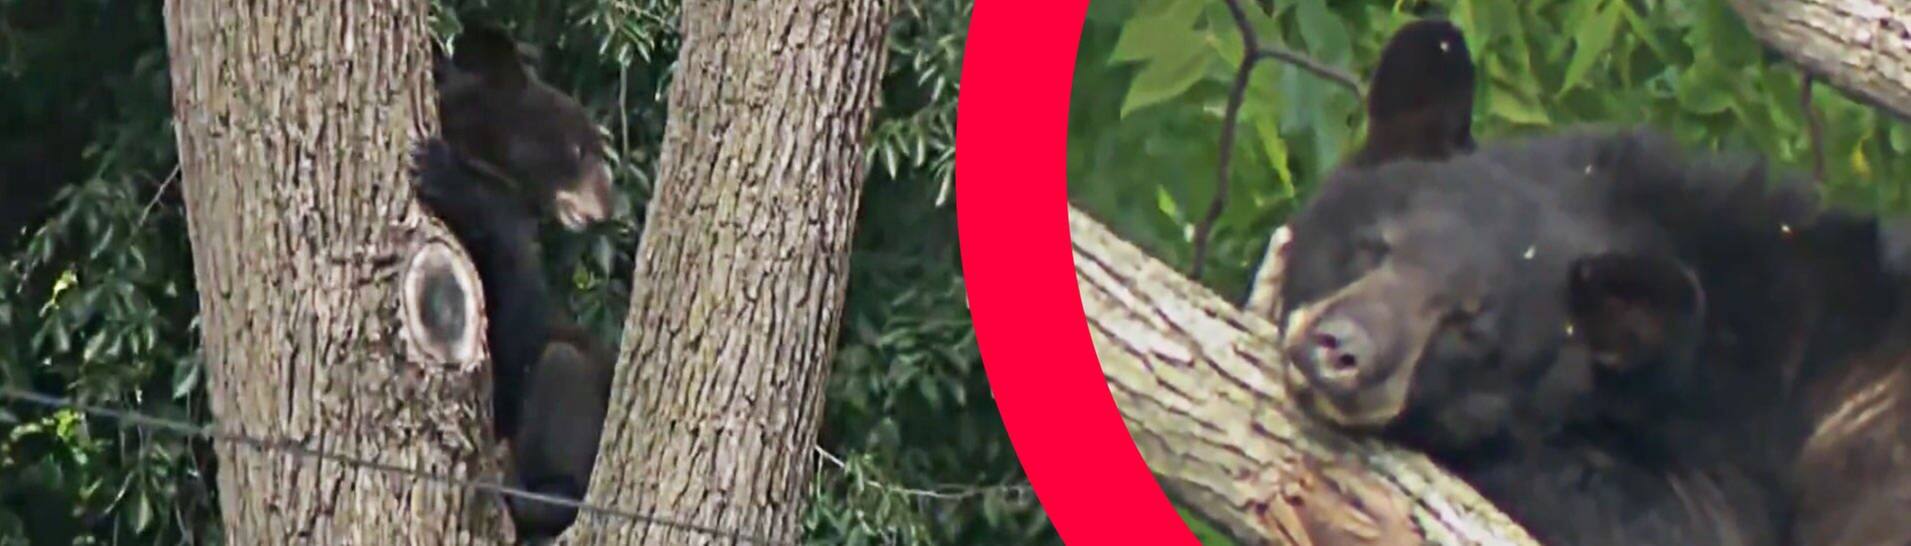 Sreenshot aus Video von CBS Evening News: Der junge Bär sitzt in einem Baum in Washington. Collage SWR